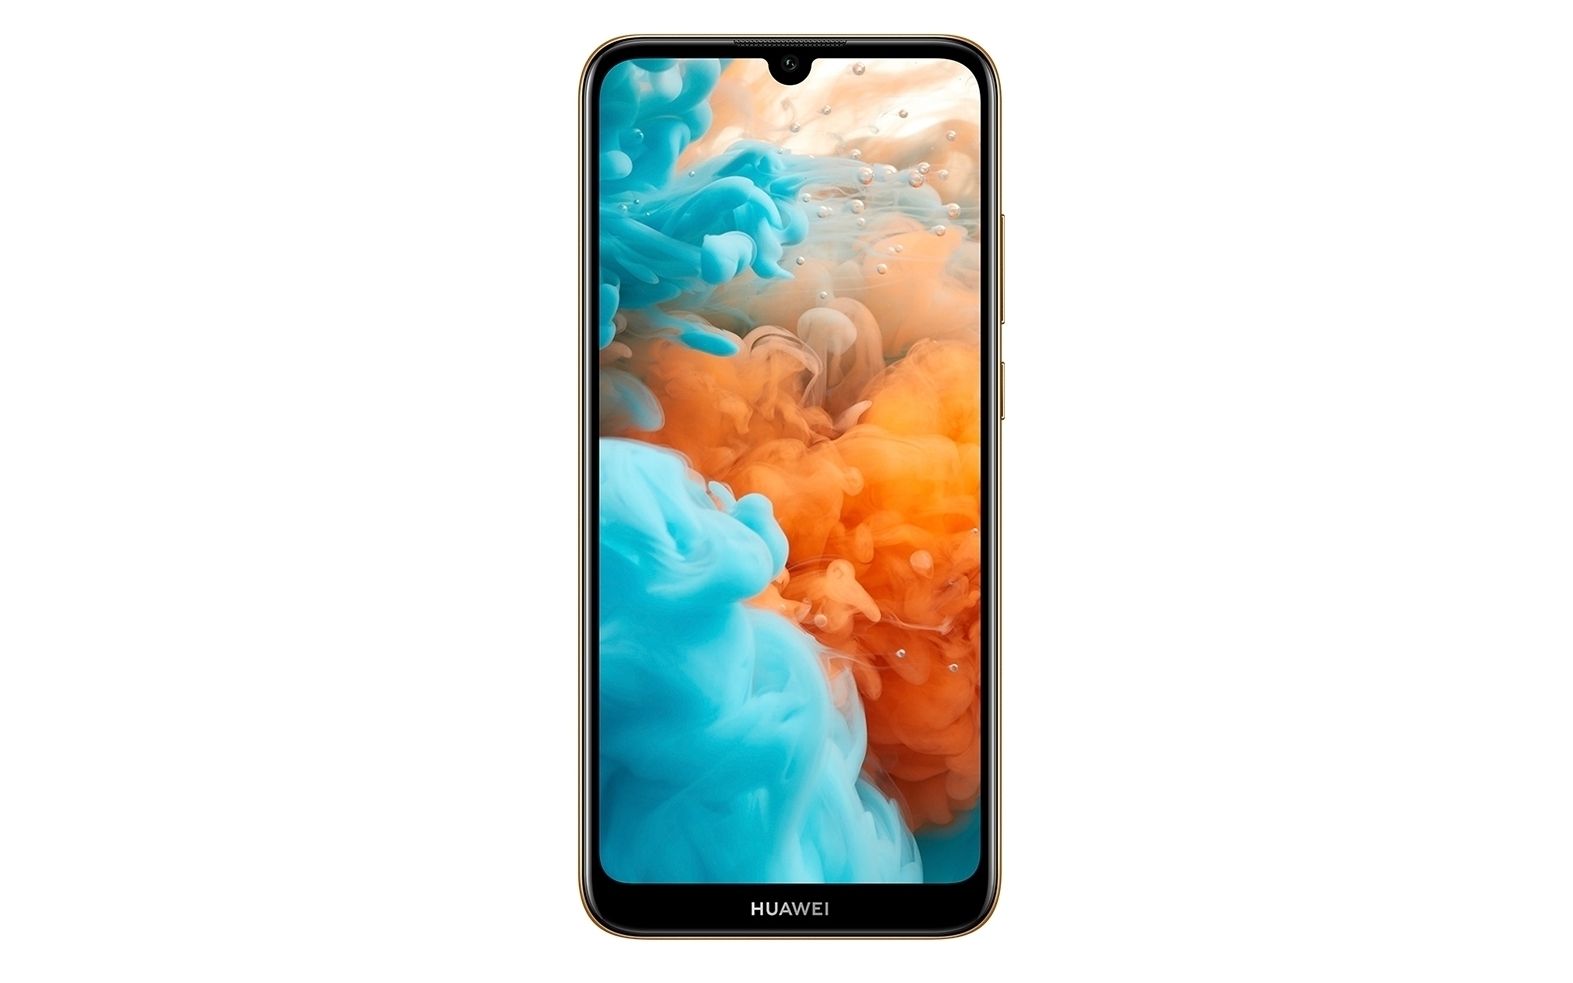 هواوي تعلن رسمياً عن أحدث الهواتف الاقتصادية منخفضة التكلفة Huawei Y6 Pro 2019